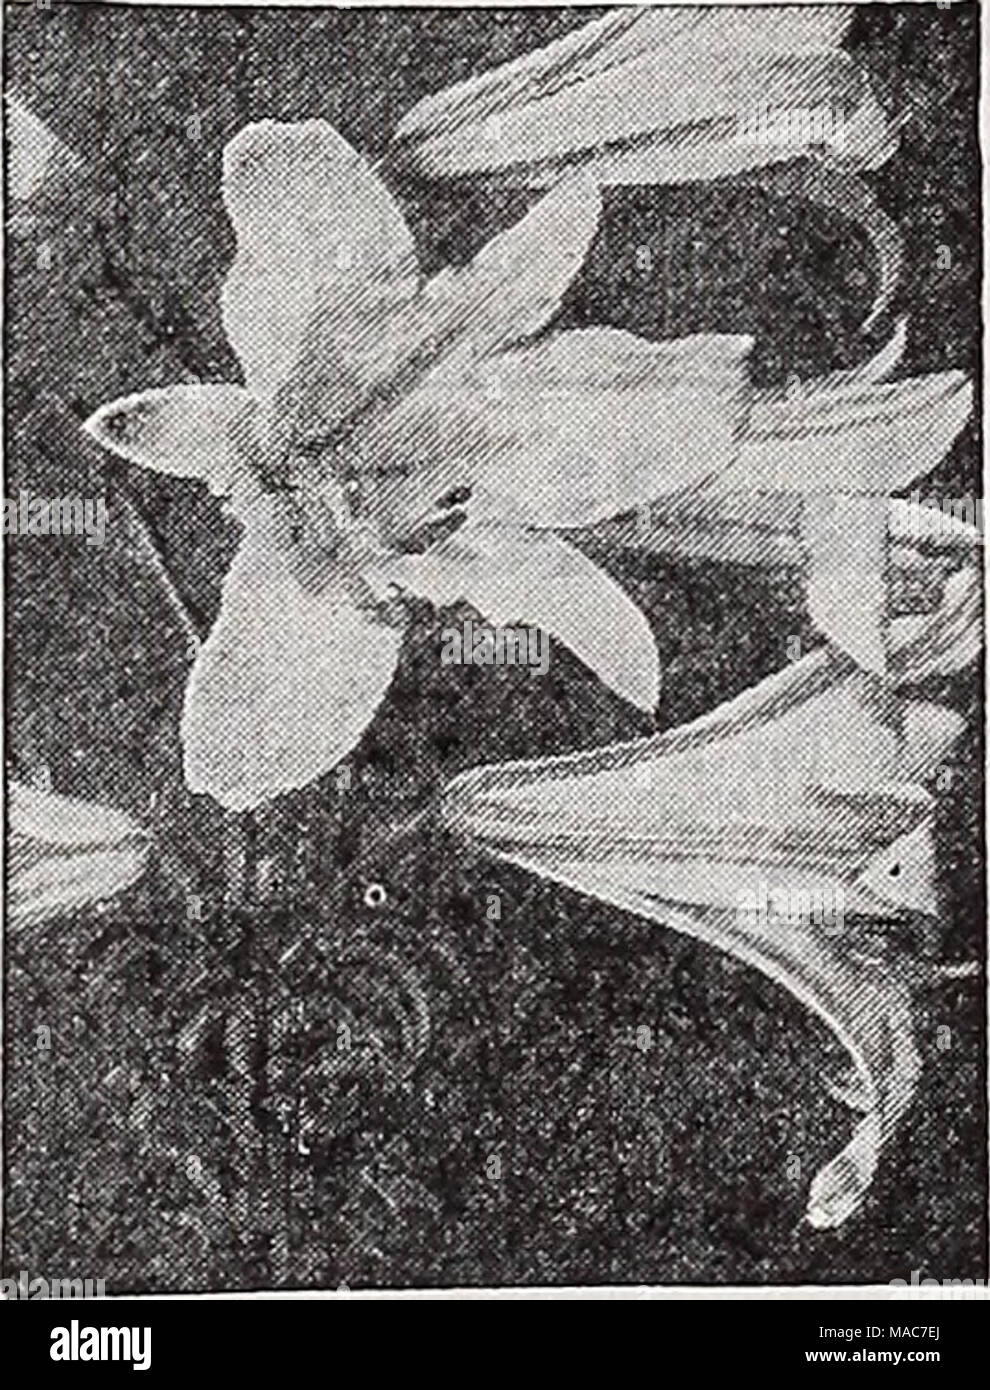 . Les nouveautés et les spécialités Dreer 1939 : 101 ans de semences de qualité Dreer bulbes plantes . Lilium regale-Royal Lily Regale Regal (Lily). ® 3-5 ft. Mag- nificent, grandes, en forme de trompette, doux parfum, fleurs blanches, rose à l'ombre sur l'extérieur et teinté de jaune à la base. L'environnement de la chaux. Floraison en juillet. Ampoules 7 Couvercle de 80 cm de profondeur. 25c chaque ; 2,50 $ douz. Speciosum (album Show Blanc Lily). ® 3 ft. Grandes trompettes blanches avec bande verdâtre. Fleurit en août et septembre. L'impartialité en chaux et fait bien dans l'une ou l'autre soleil ou ombre. Ampoules couvrir 8 pouces de profondeur. 50c ; chaque 5 $ par douz. Speciosum Banque D'Images